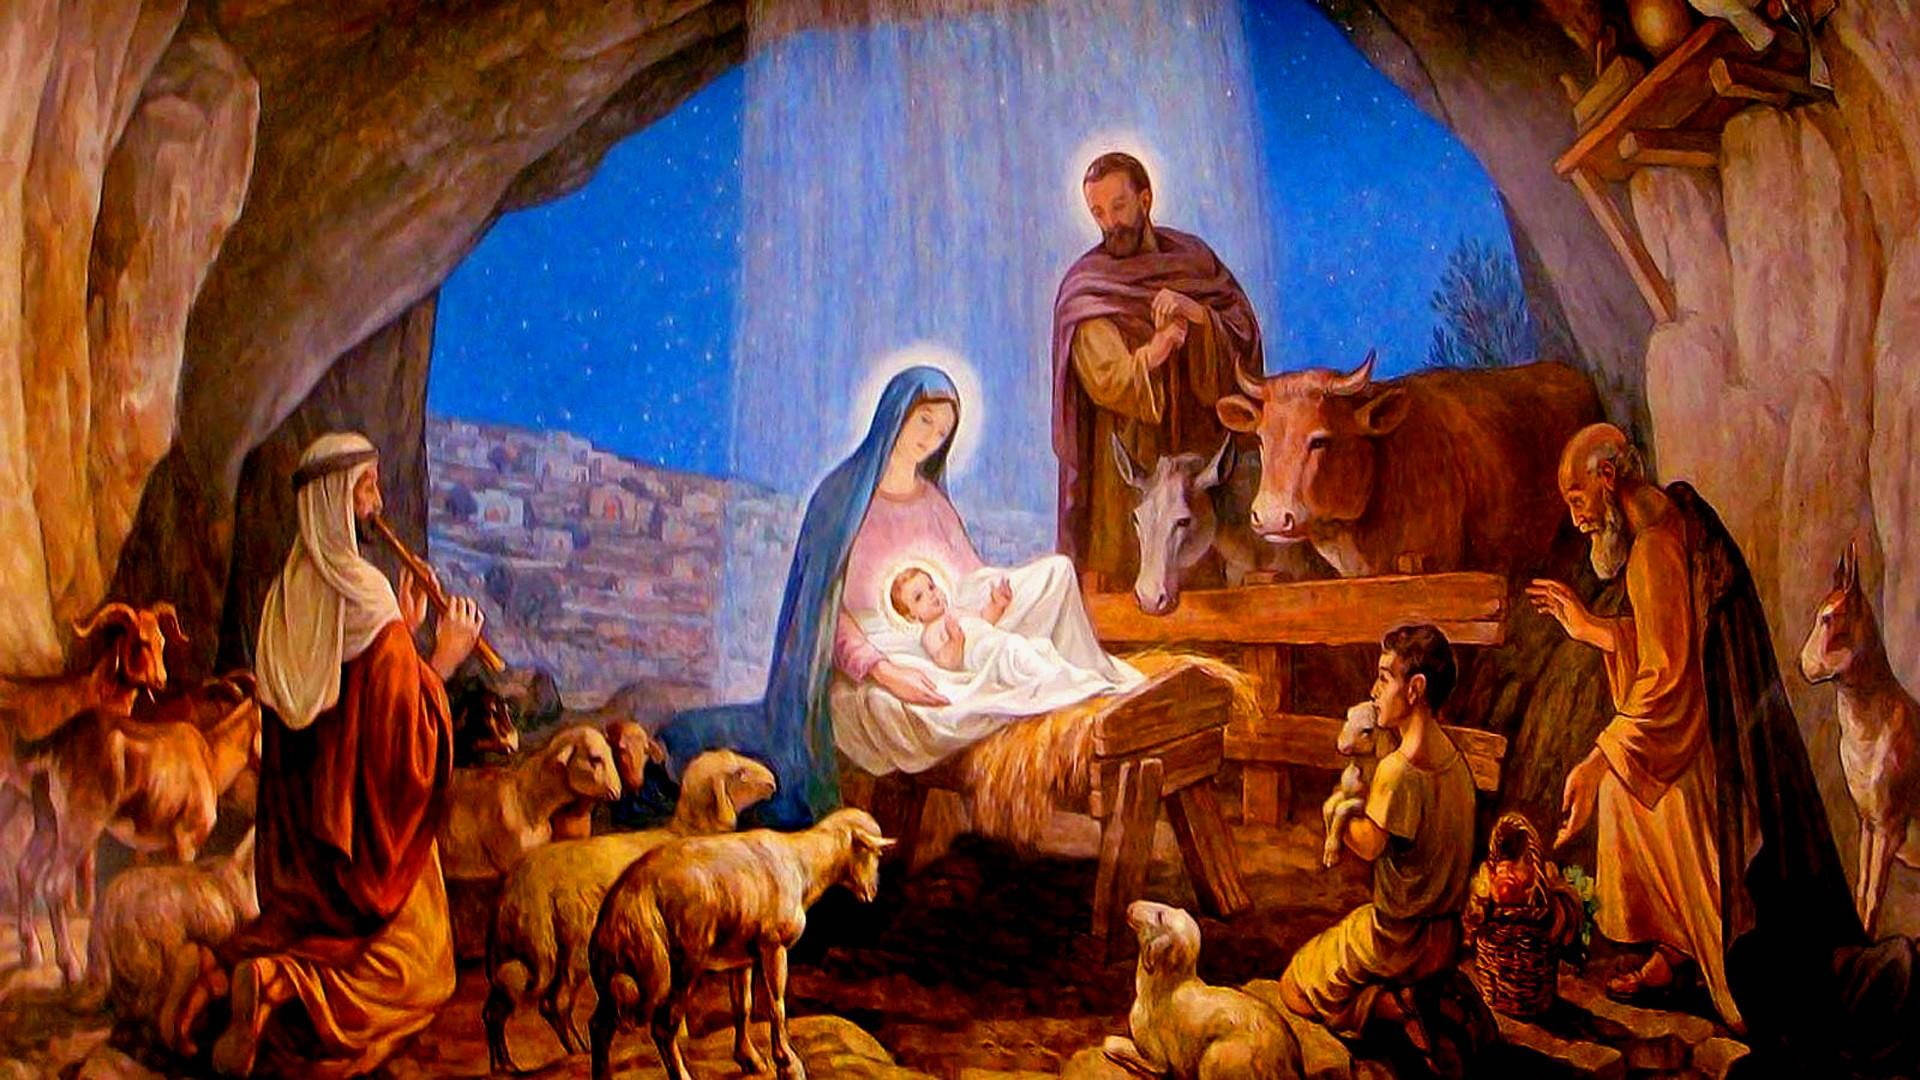 Jesus Christ Nativity Scene Background